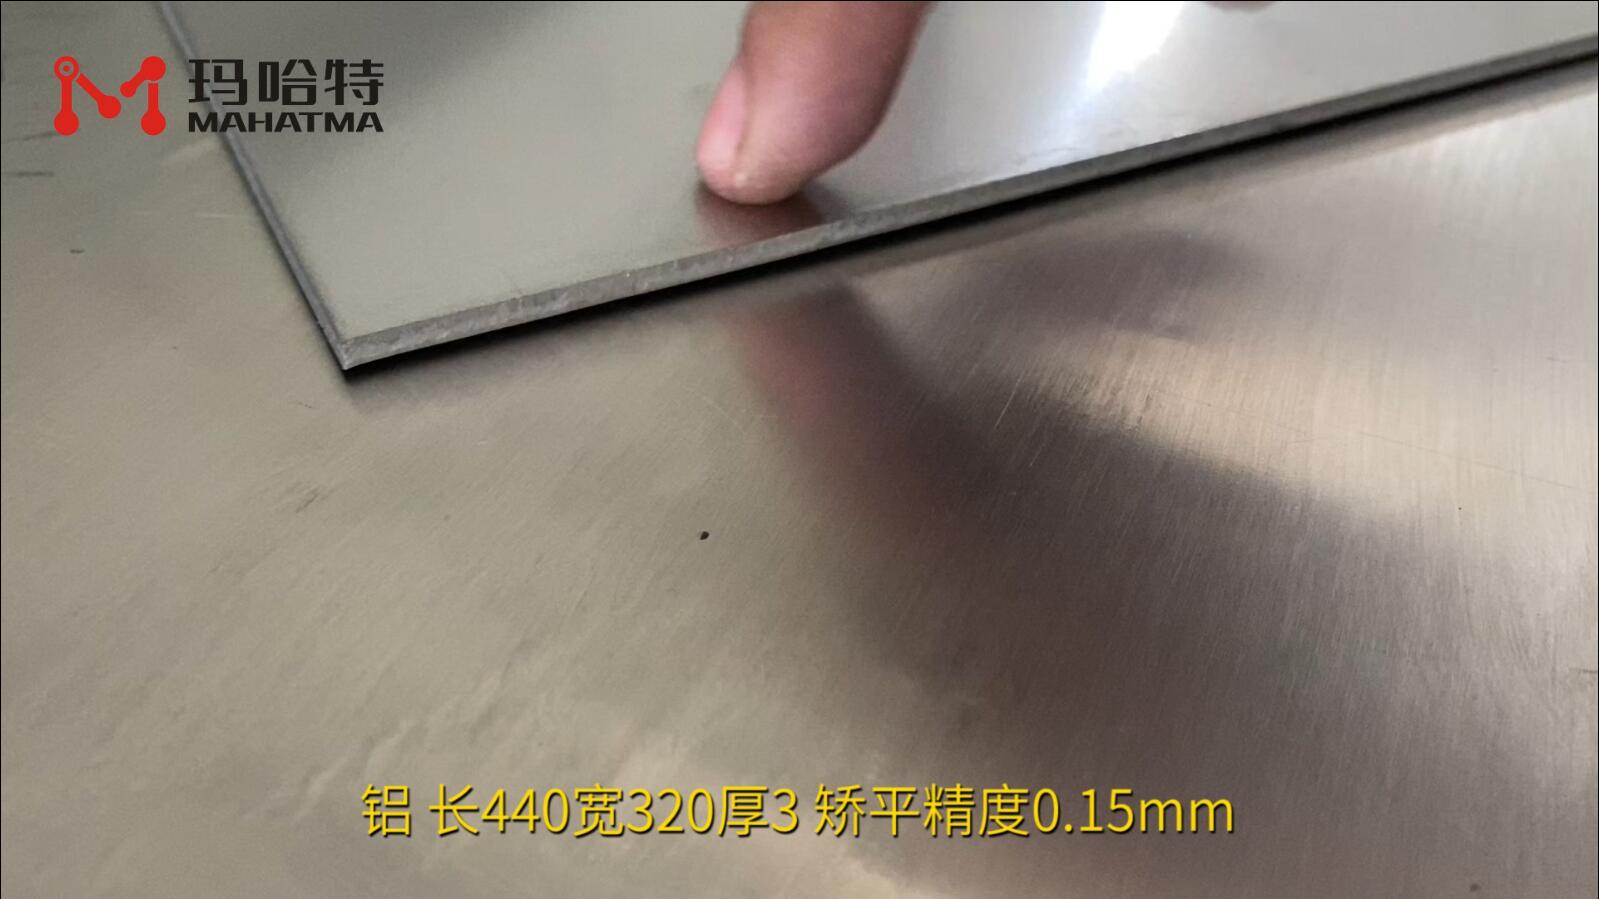 铝 MHT60-600 长方形 长440宽320厚3 矫平精度0.15mm